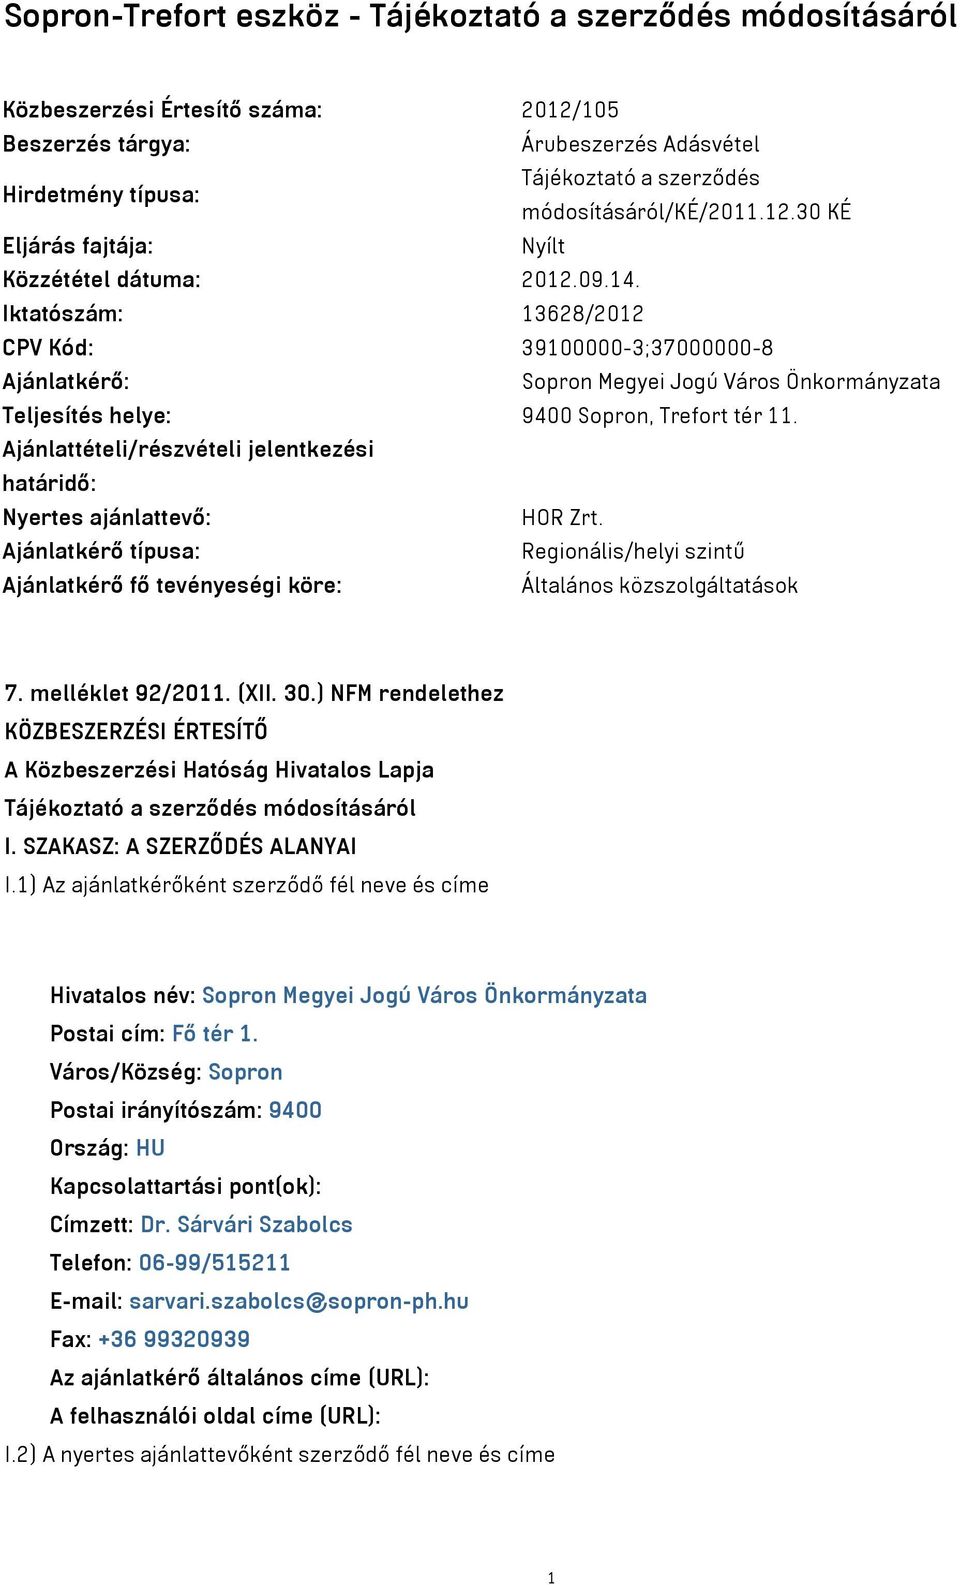 Iktatószám: 13628/2012 CPV Kód: 39100000-3;37000000-8 Ajánlatkérő: Sopron Megyei Jogú Város Önkormányzata Teljesítés helye: 9400 Sopron, Trefort tér 11.